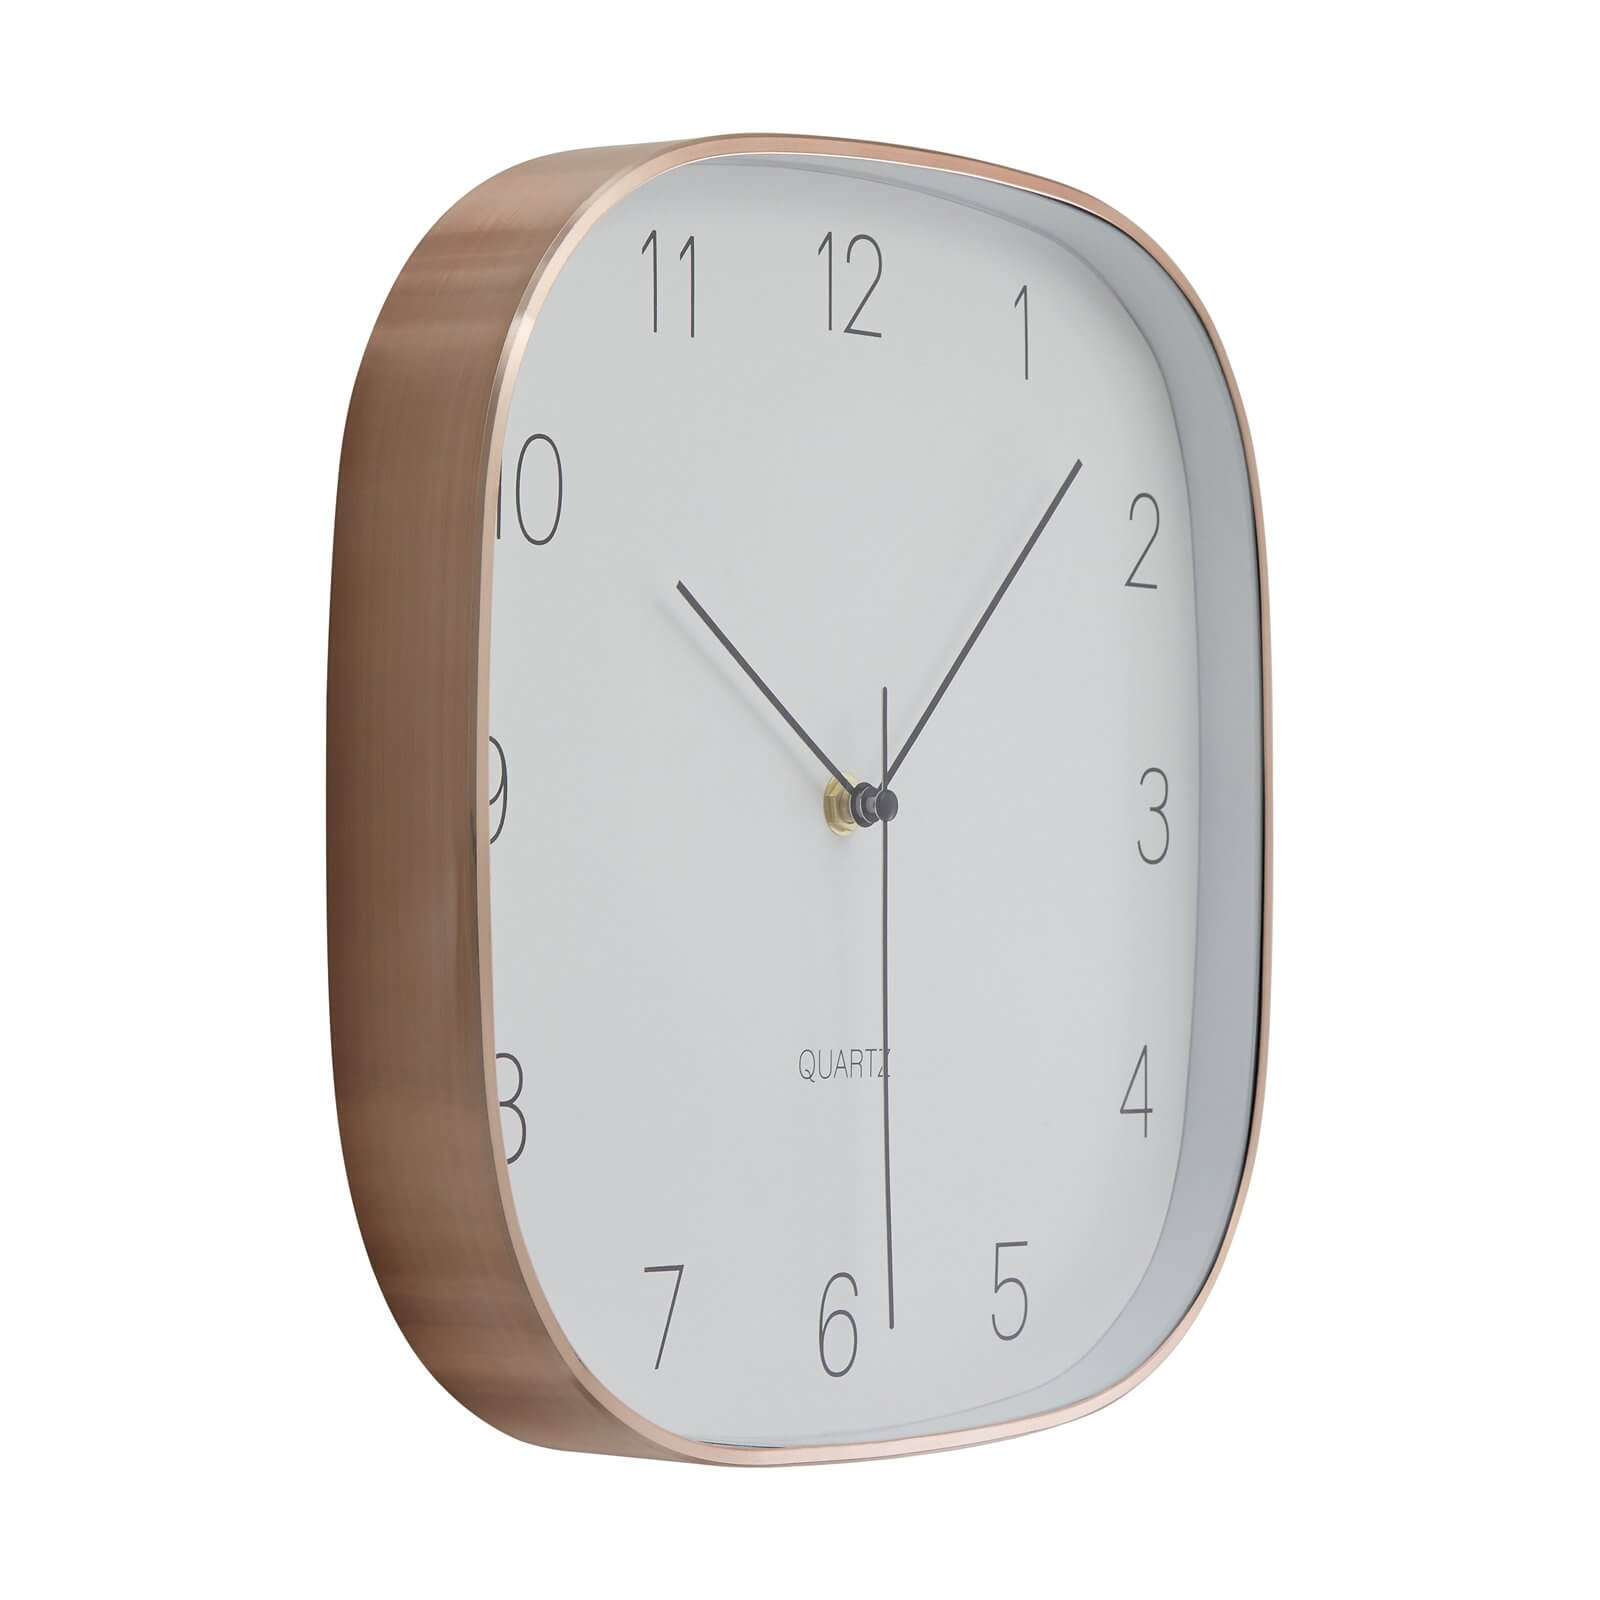 Elko Square Wall Clock - Copper